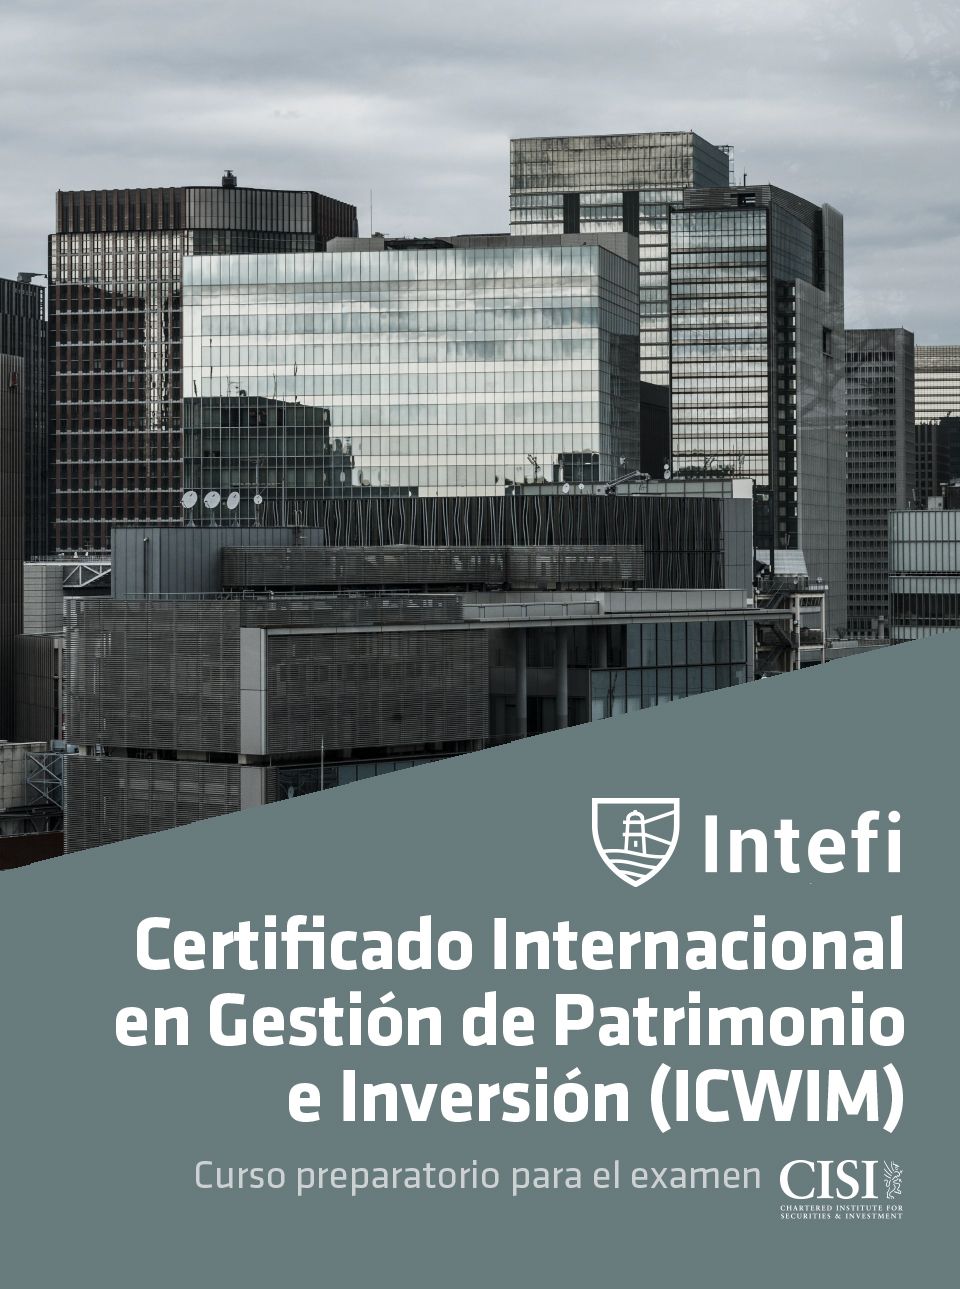 Certificado Internacional en Gestión de Patrimonio e Inversión (ICWIM)